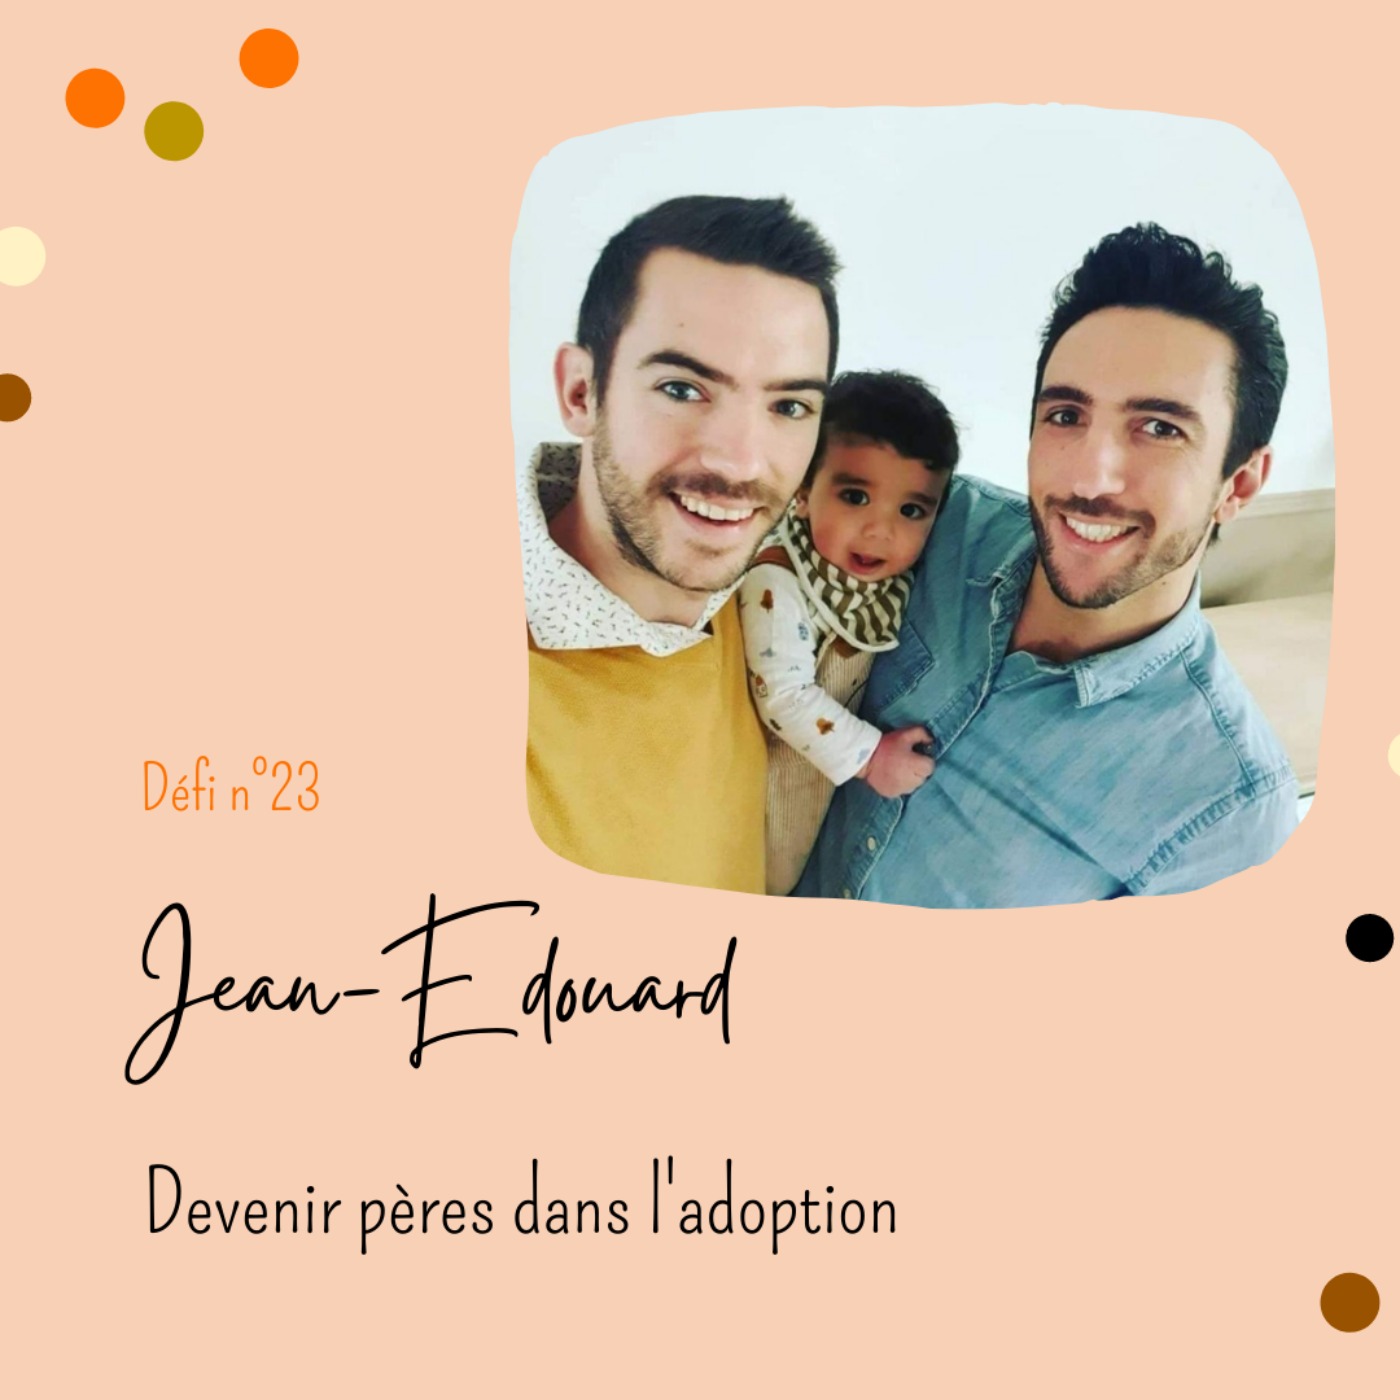 Défi n°23 : Jean-Edouard, devenir pères dans l'adoption